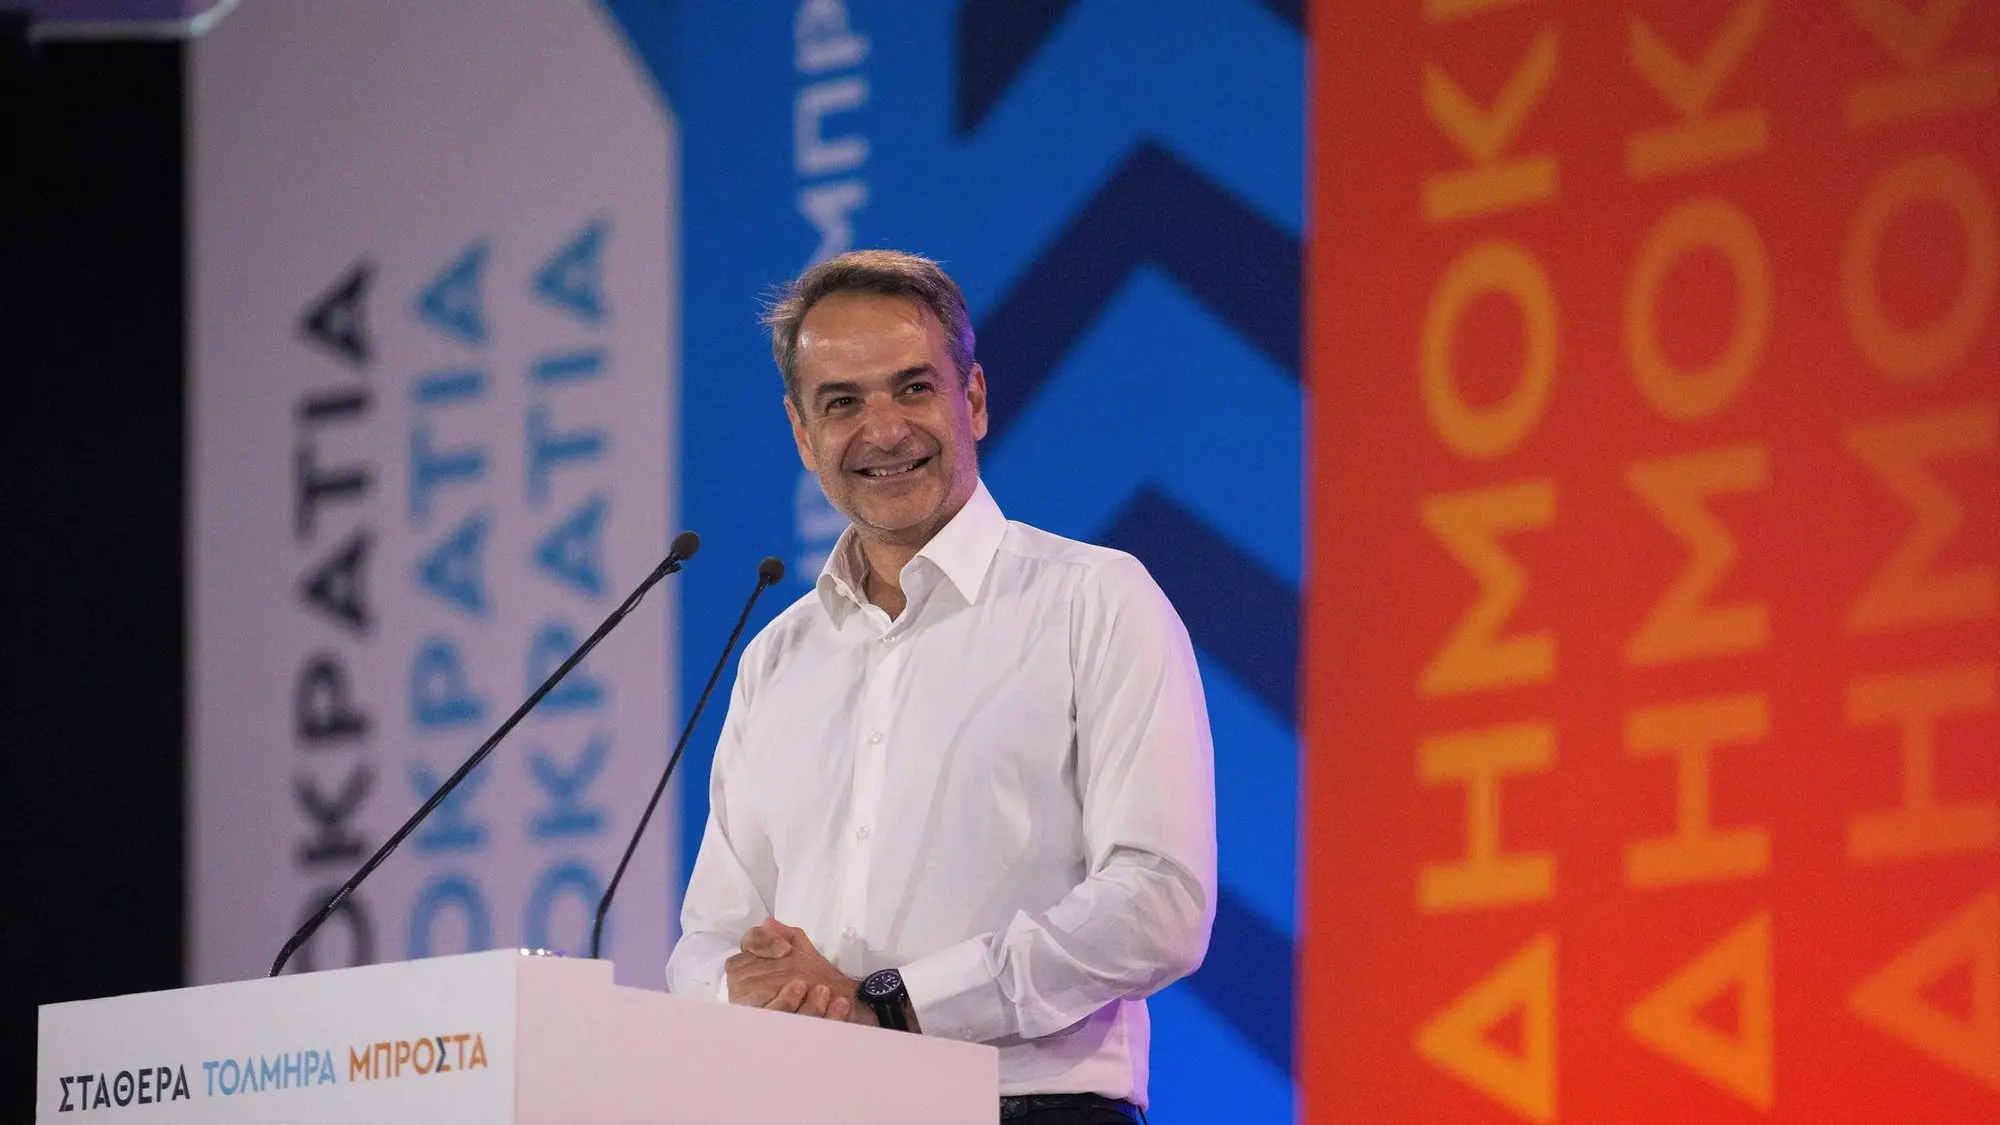 Ελλάδα, ο Μητσοτάκης κερδίζει αλλά αυτό δεν αρκεί.  Οδεύουμε προς νέες εκλογές